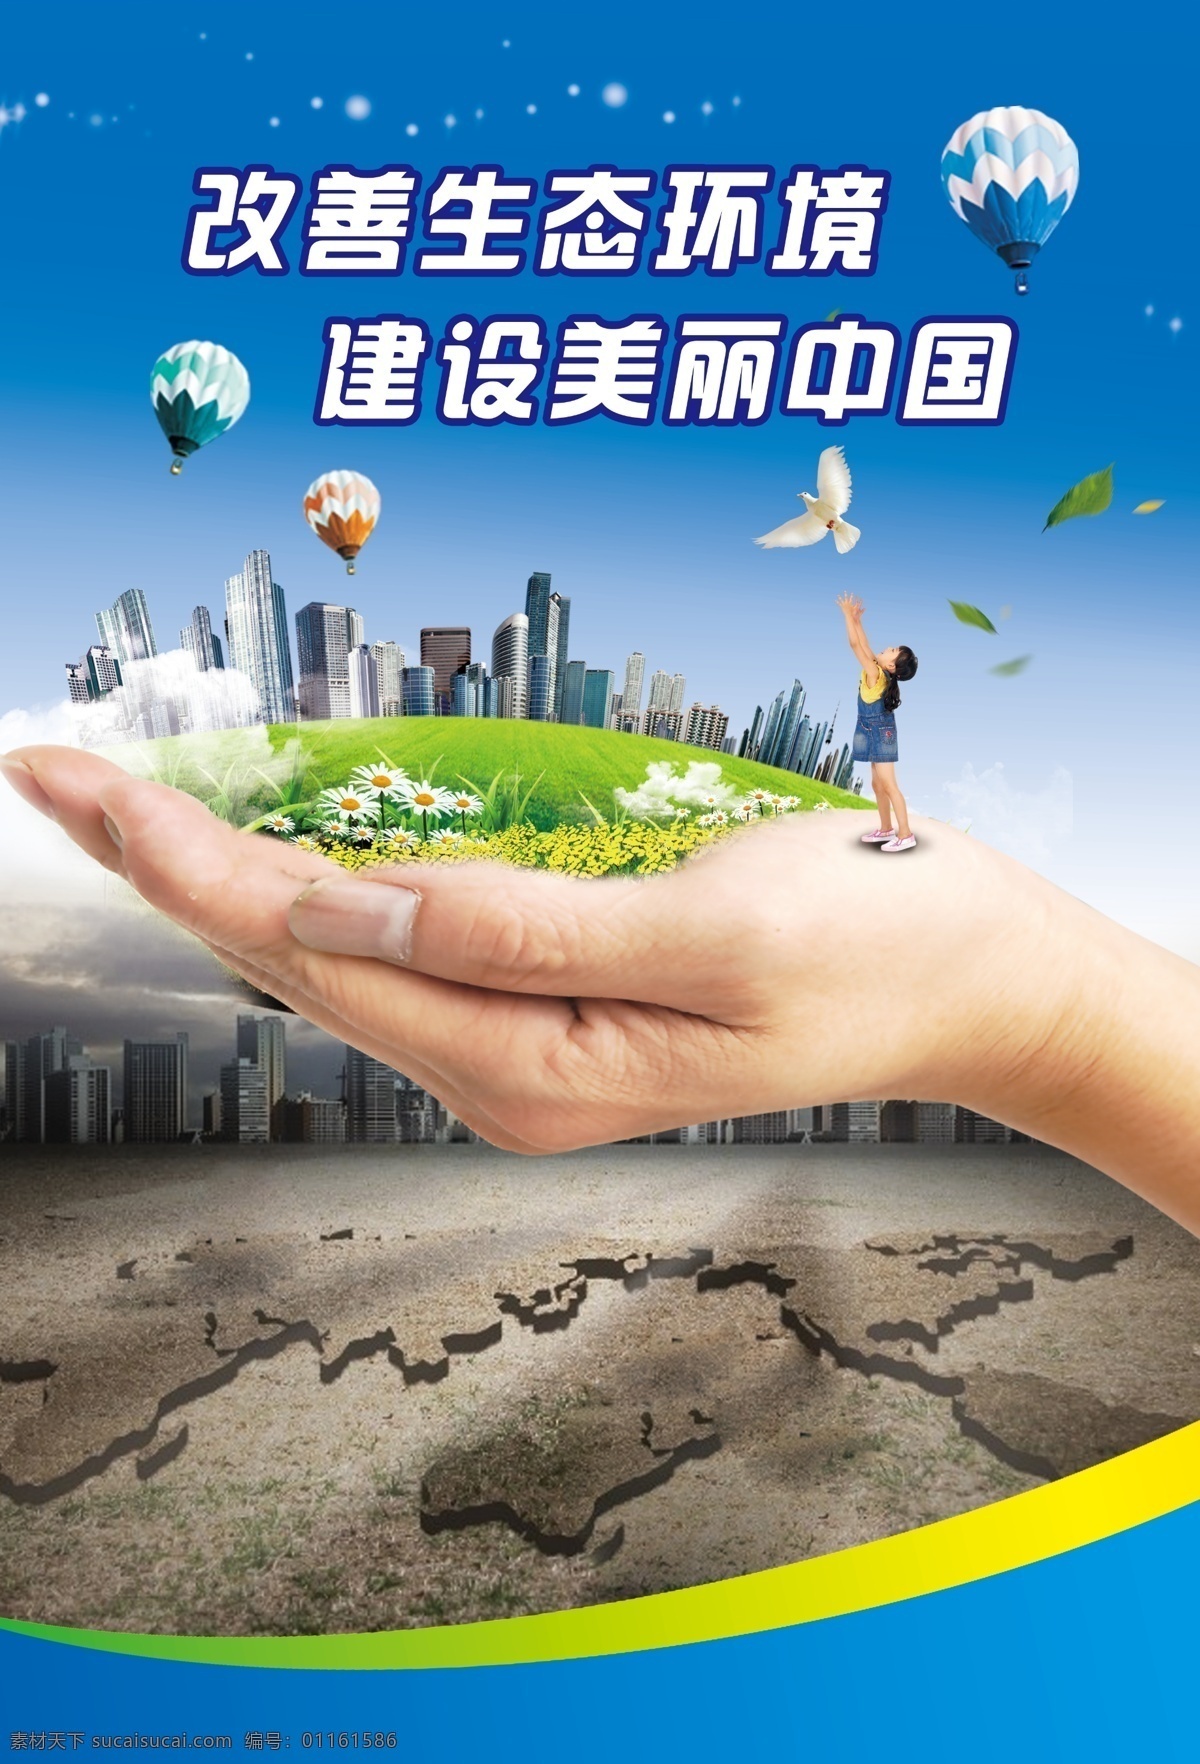 改善生态环境 建设美丽中国 低碳环保 新生活 蓝色